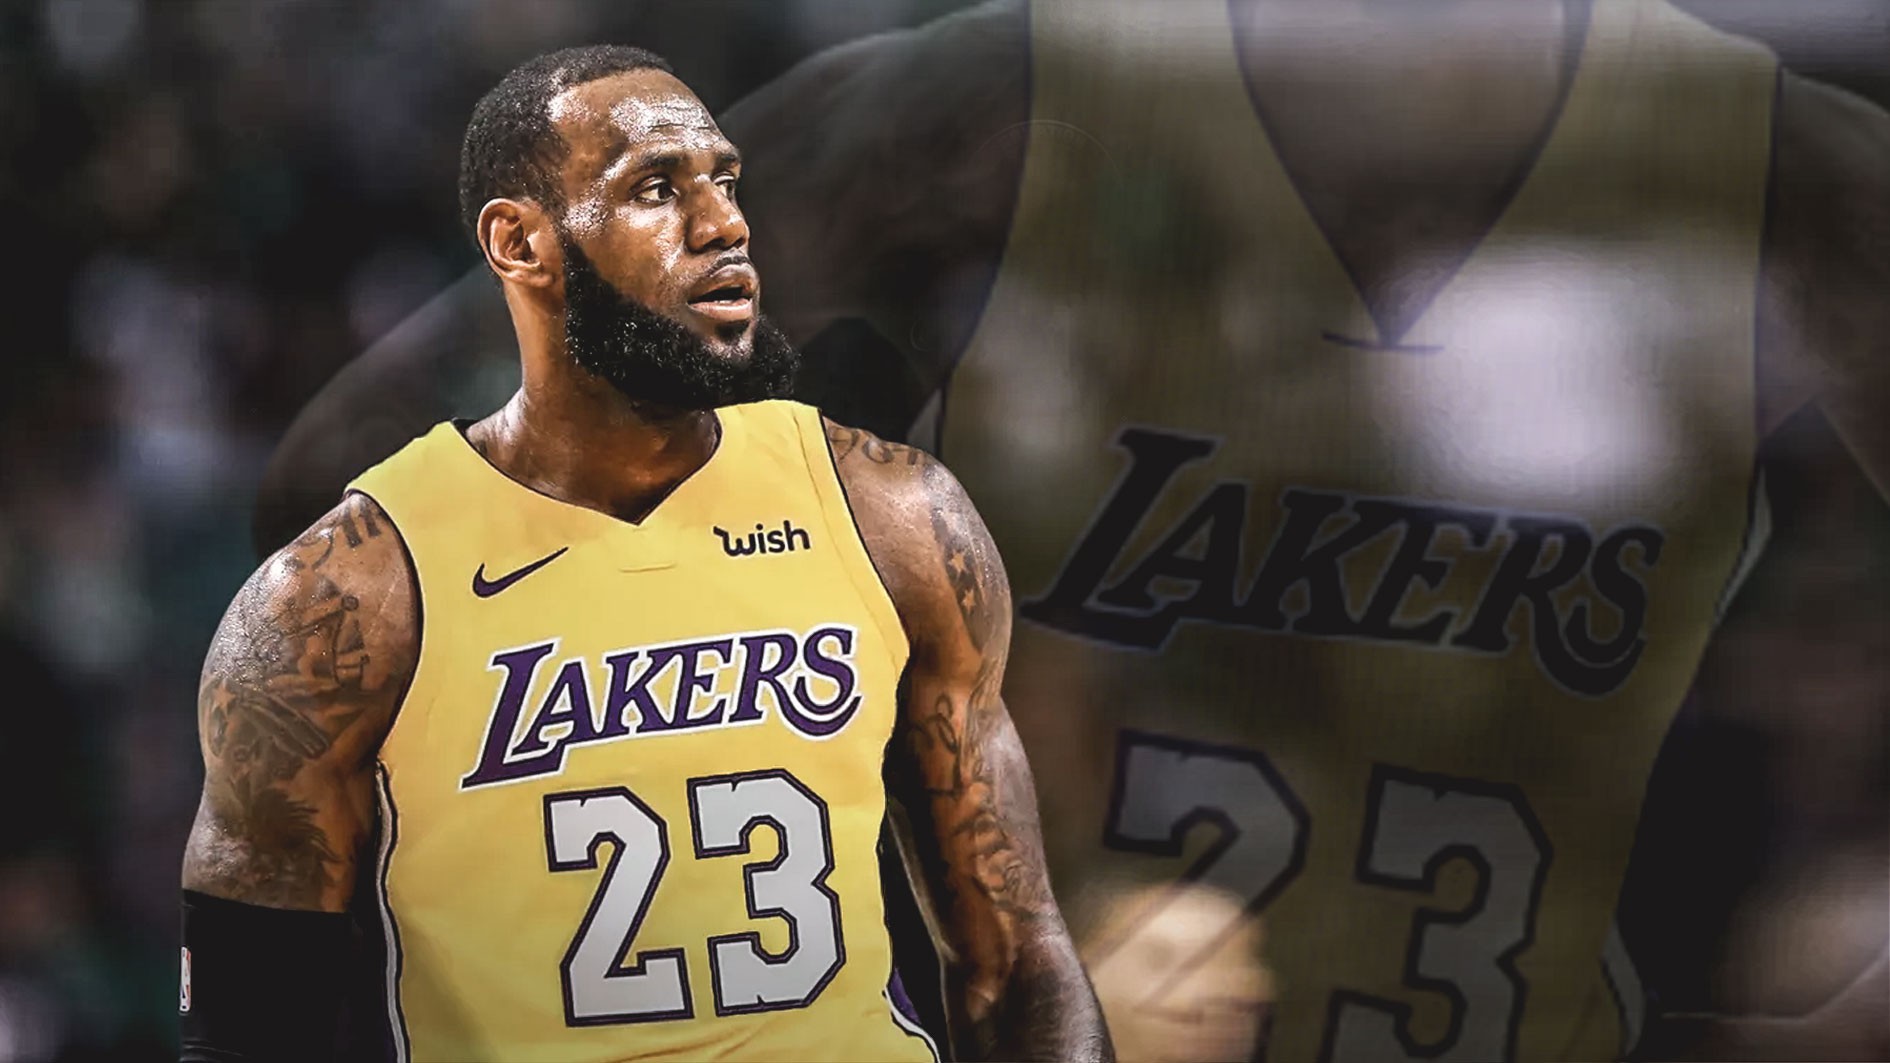 Muốn chiêu mộ LeBron James? Hãy học sự tinh tế của Magic Johnson và Los Angeles Lakers - Ảnh 4.